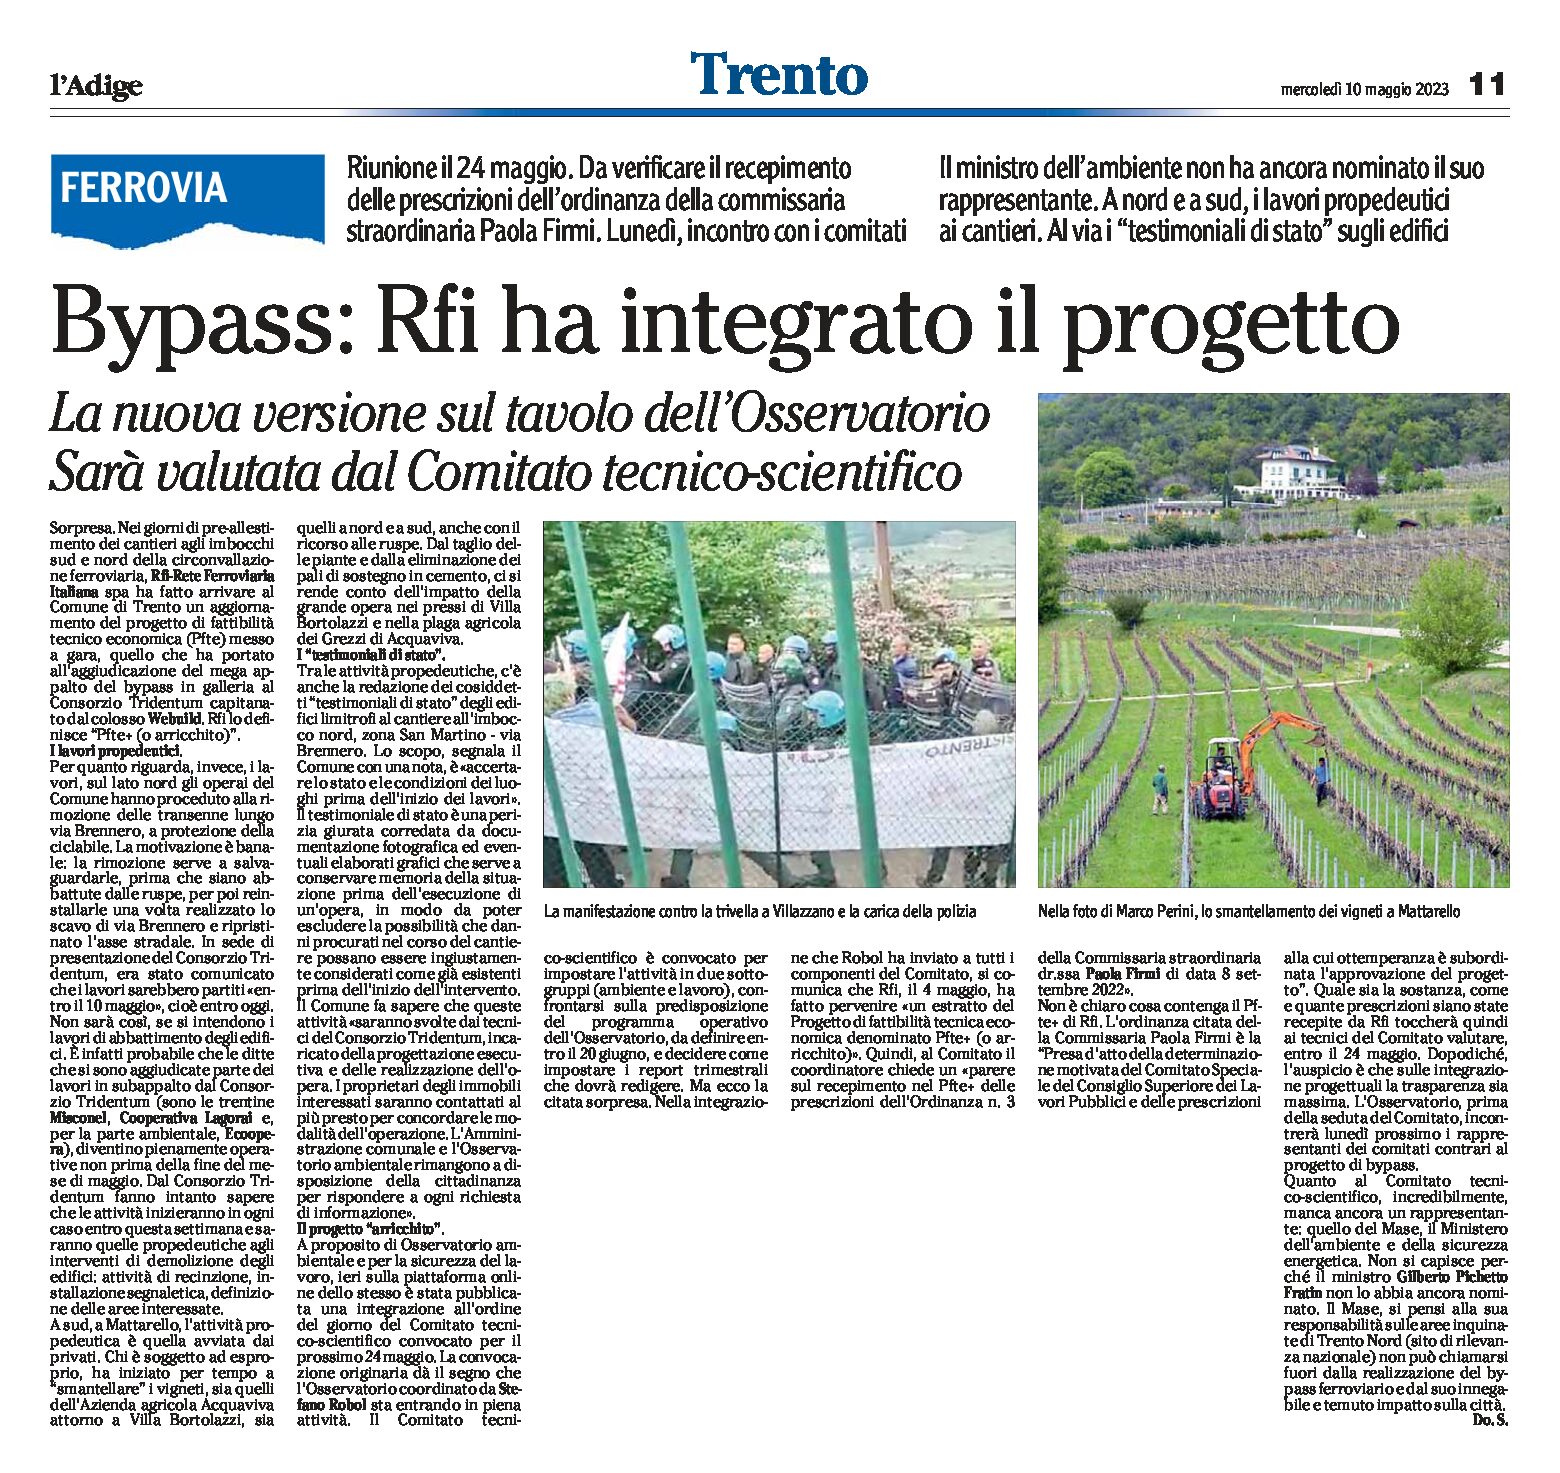 Trento, bypass: Rfi ha integrato il progetto che sarà valutato dal Comitato tecnico-scientifico